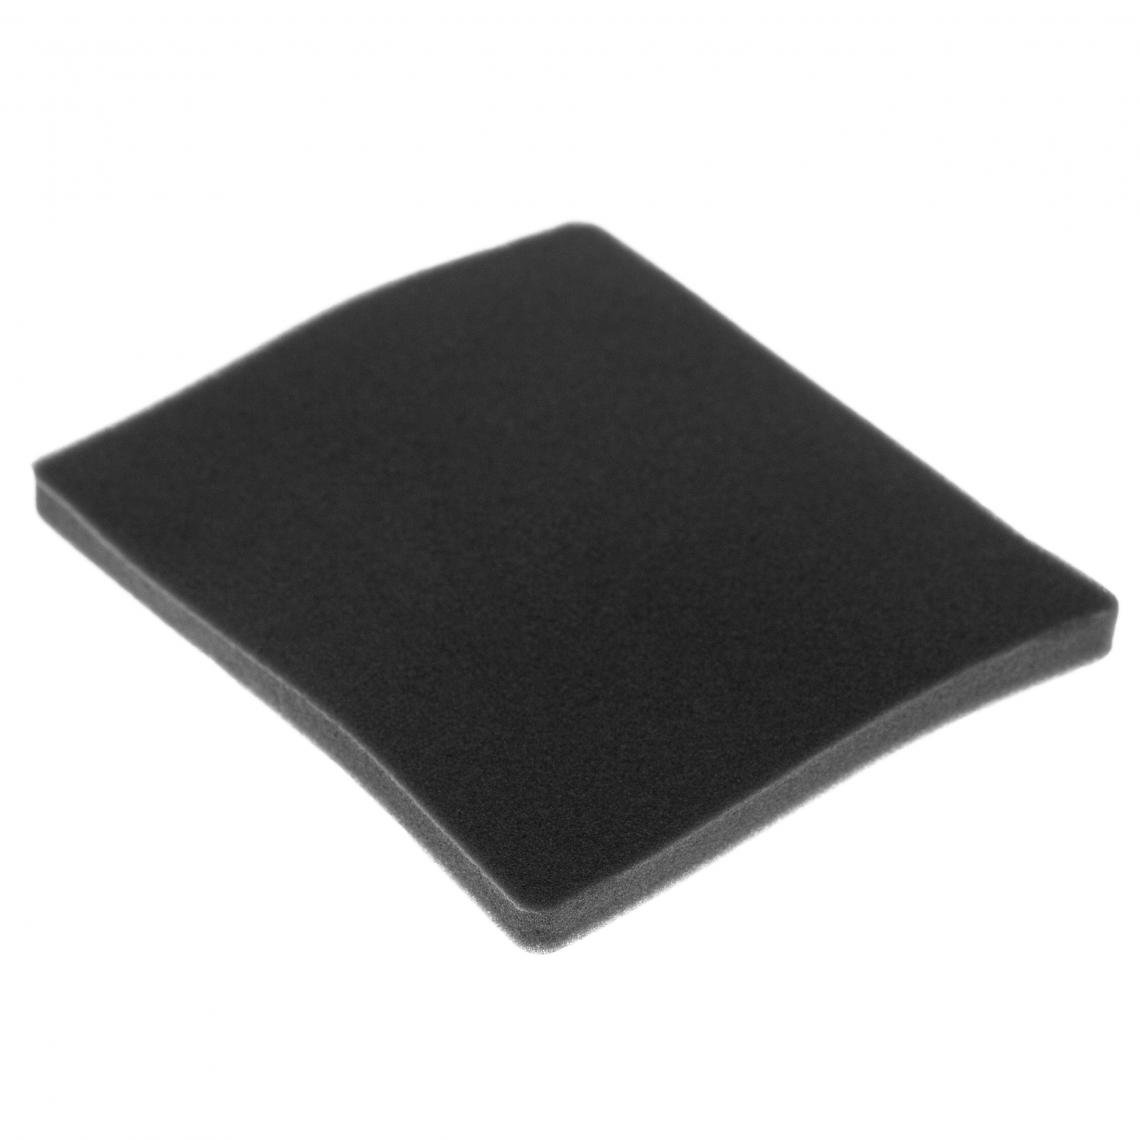 Vhbw - vhbw Filtre compatible avec Electrolux ZAM6220 (910288770) aspirateur - filtre de sortie d'air (filtre éponge), noir - Accessoire entretien des sols